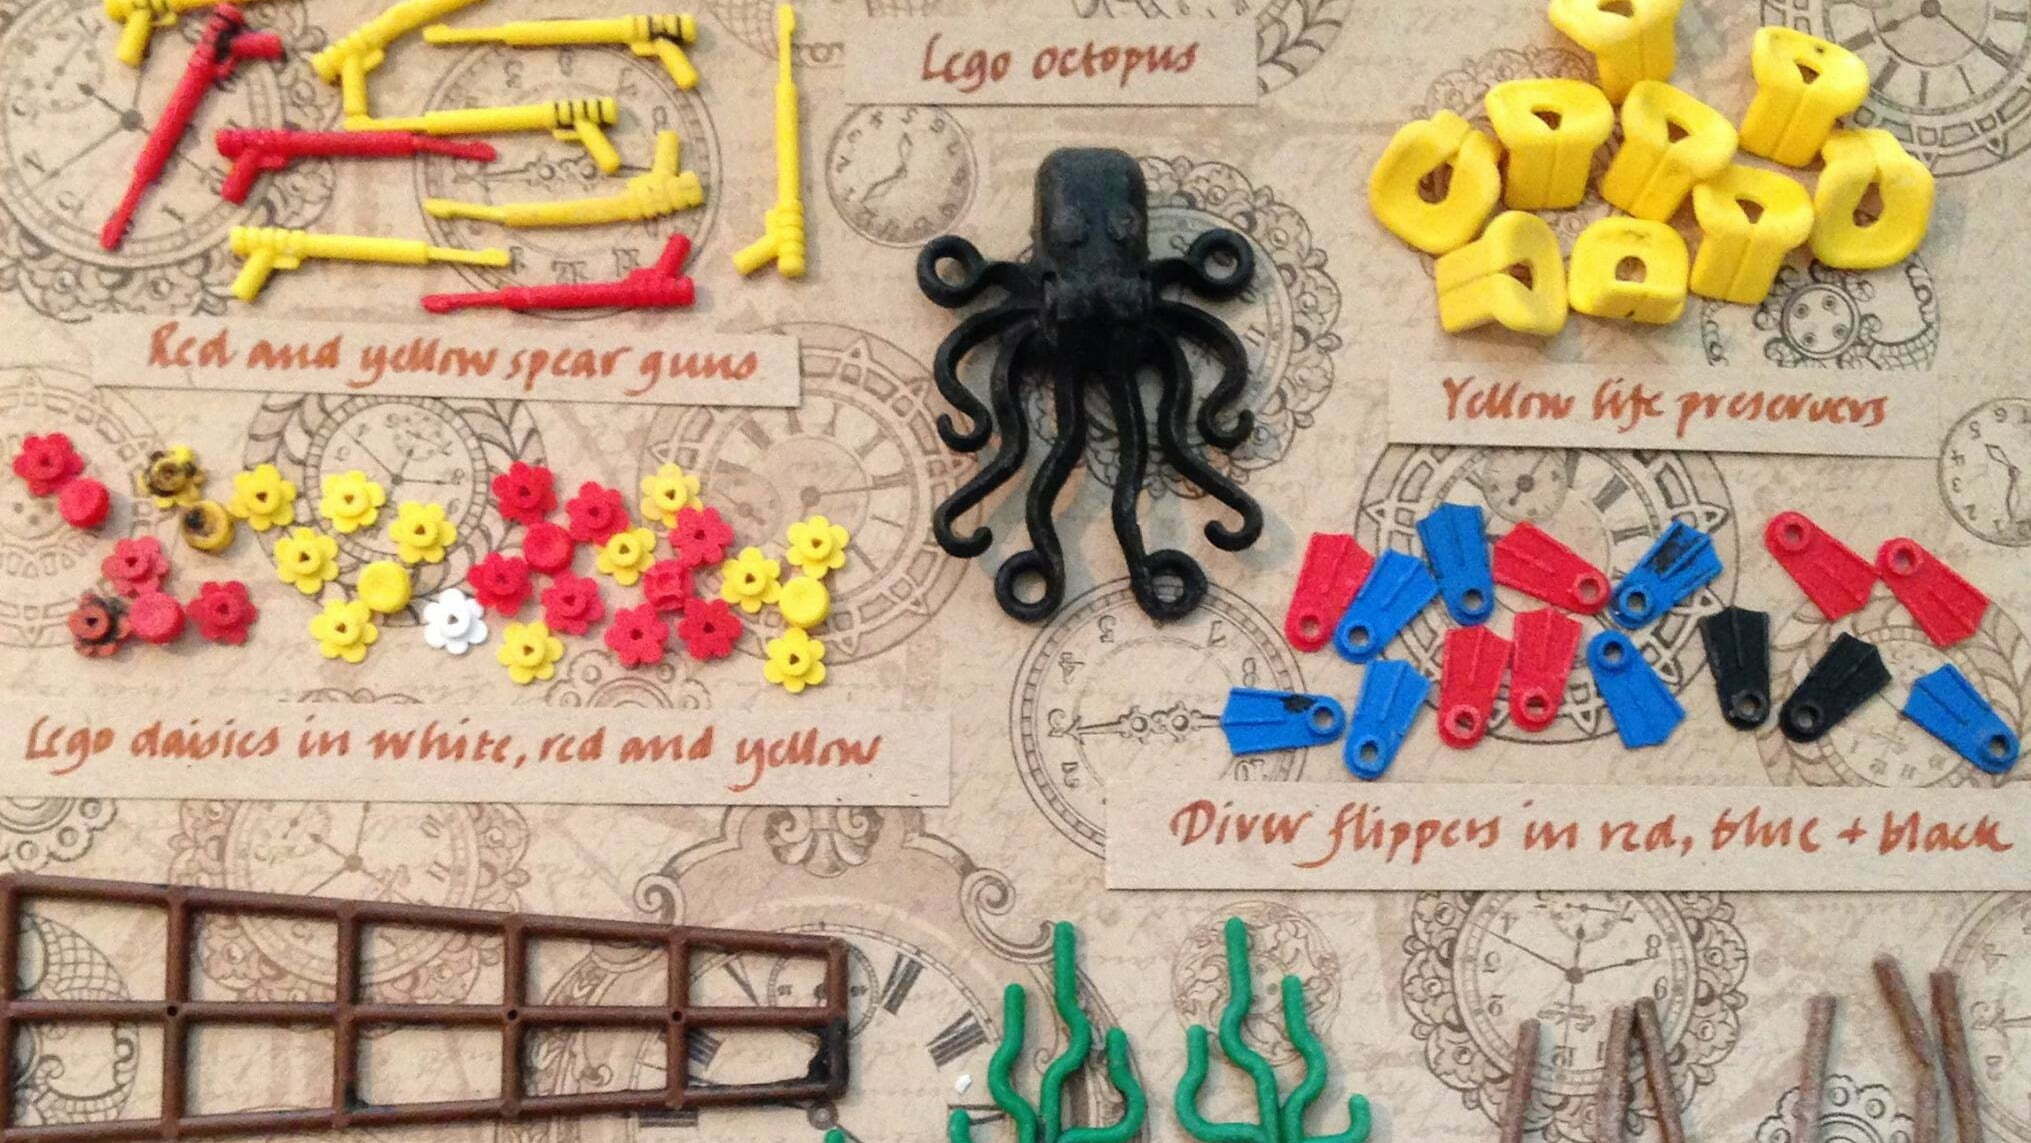 peças de lego poluem praia, imagem peças de lego poluem praia